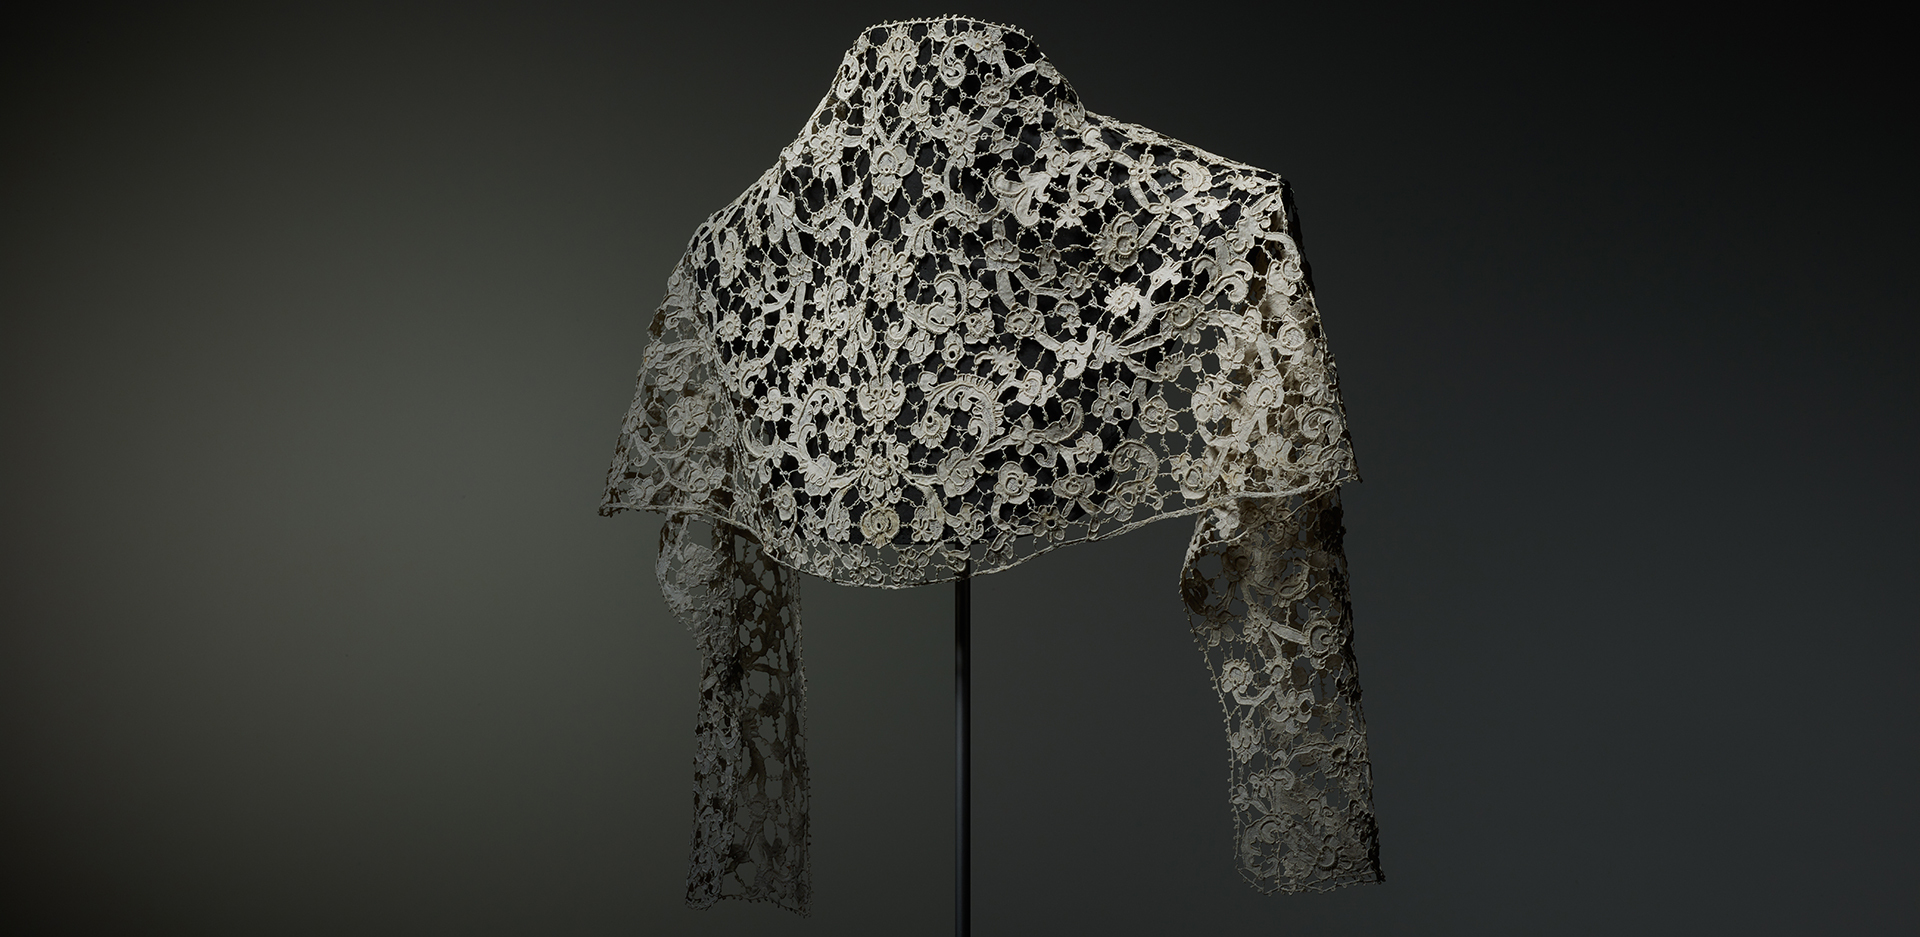 Δαντελένιο μαντήλι φτιαγμένο με βελόνα. Ιταλία, περ. 1700. Textilmuseum St. Gallen. Δωρεά του John Jacoby, 1954. © Michael Rast / Bard Graduate Center